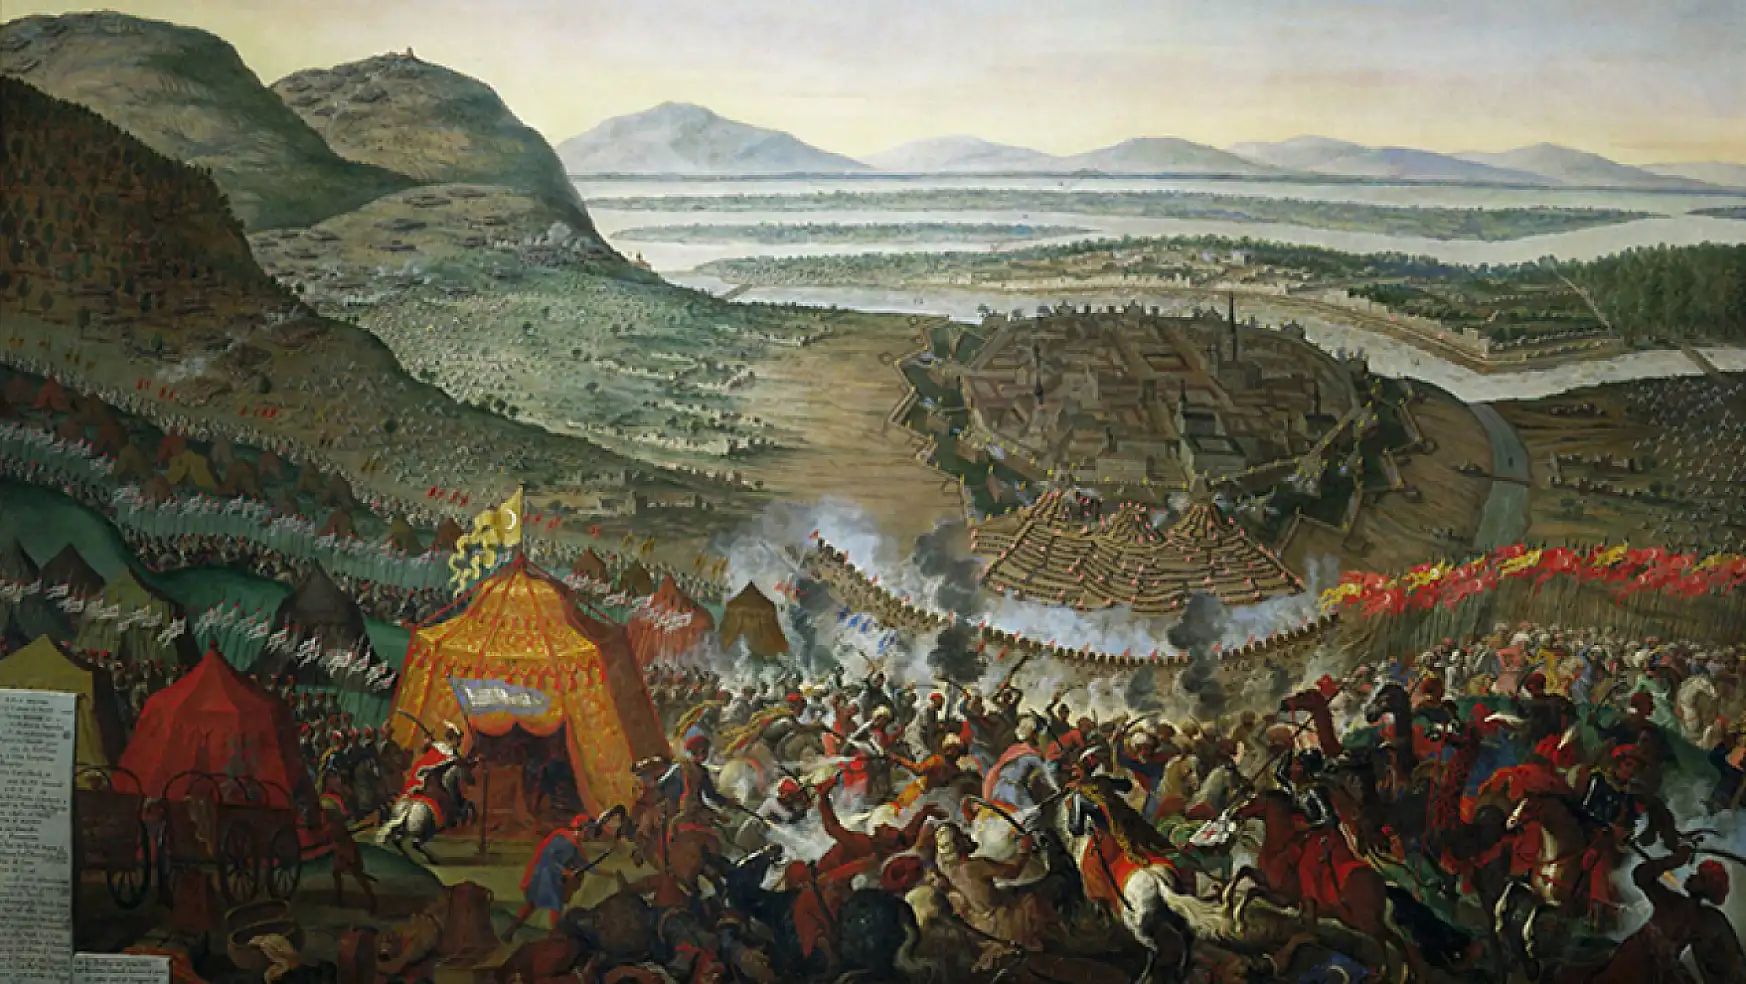 İkinci Viyana Kuşatması: Osmanlı'nın Avrupa'daki yükselişinin durduğu nokta